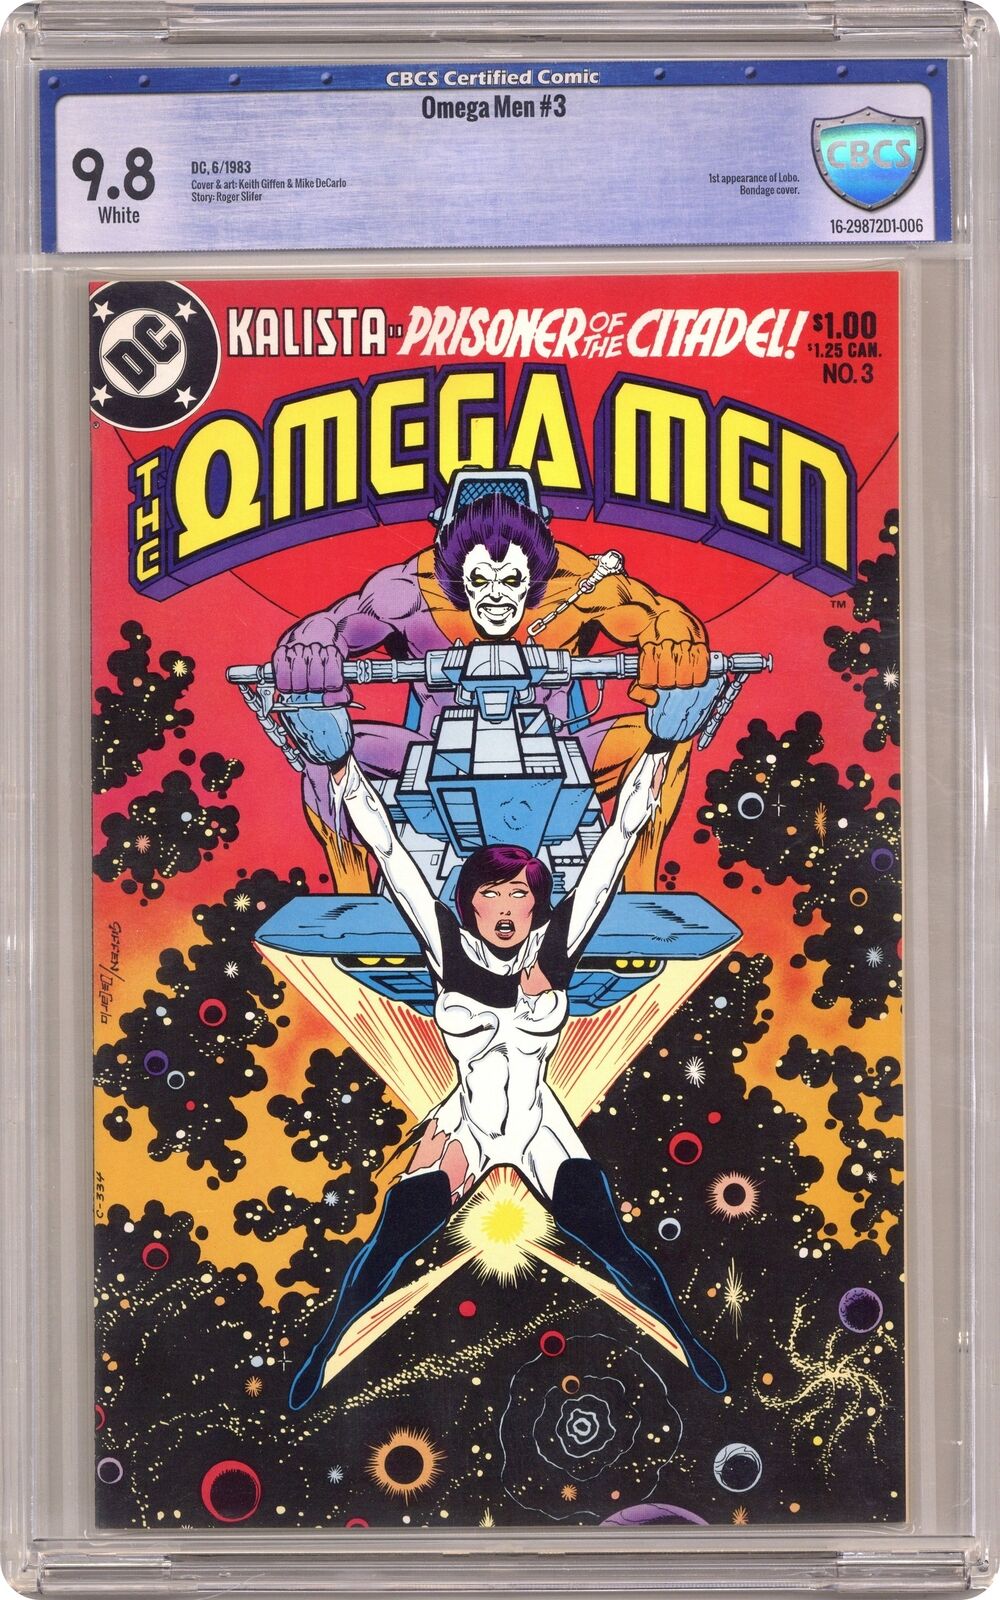 Omega Men #3 CBCS 9.8 1983 16-29872D1-006 1st app. Lobo